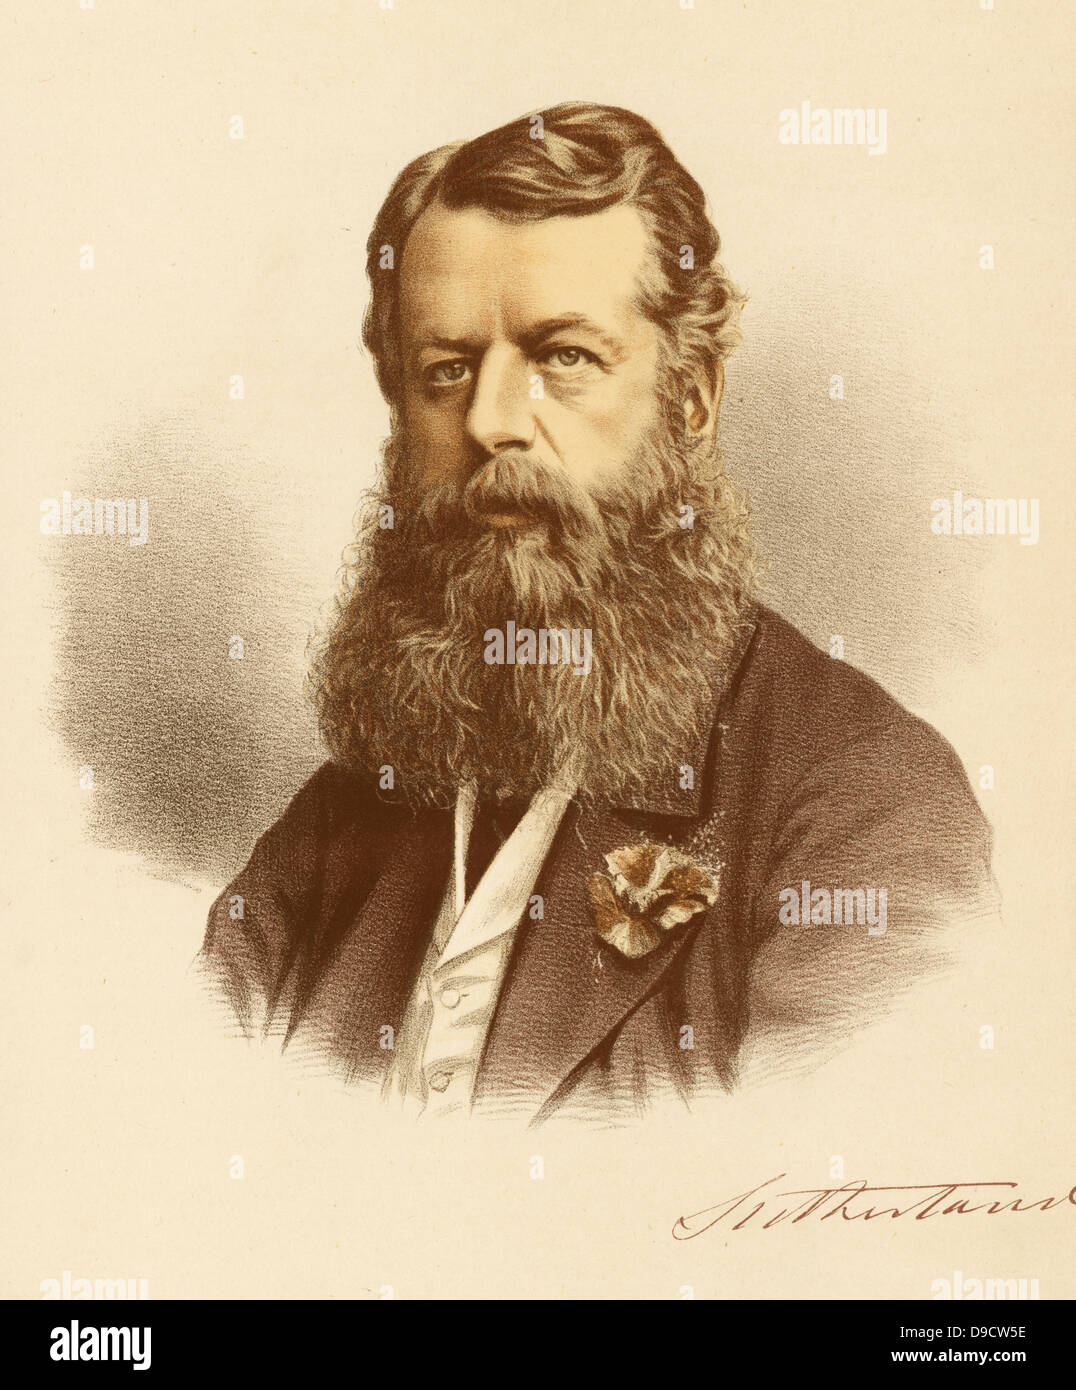 George Granville William Sutherland Leveson-Gower, 3. Herzog von Sutherland (1828-1892), der Britischen Liberalen Adligen, Höfling, und Diplomat. Getönte Lithographie, c 1880. Stockfoto